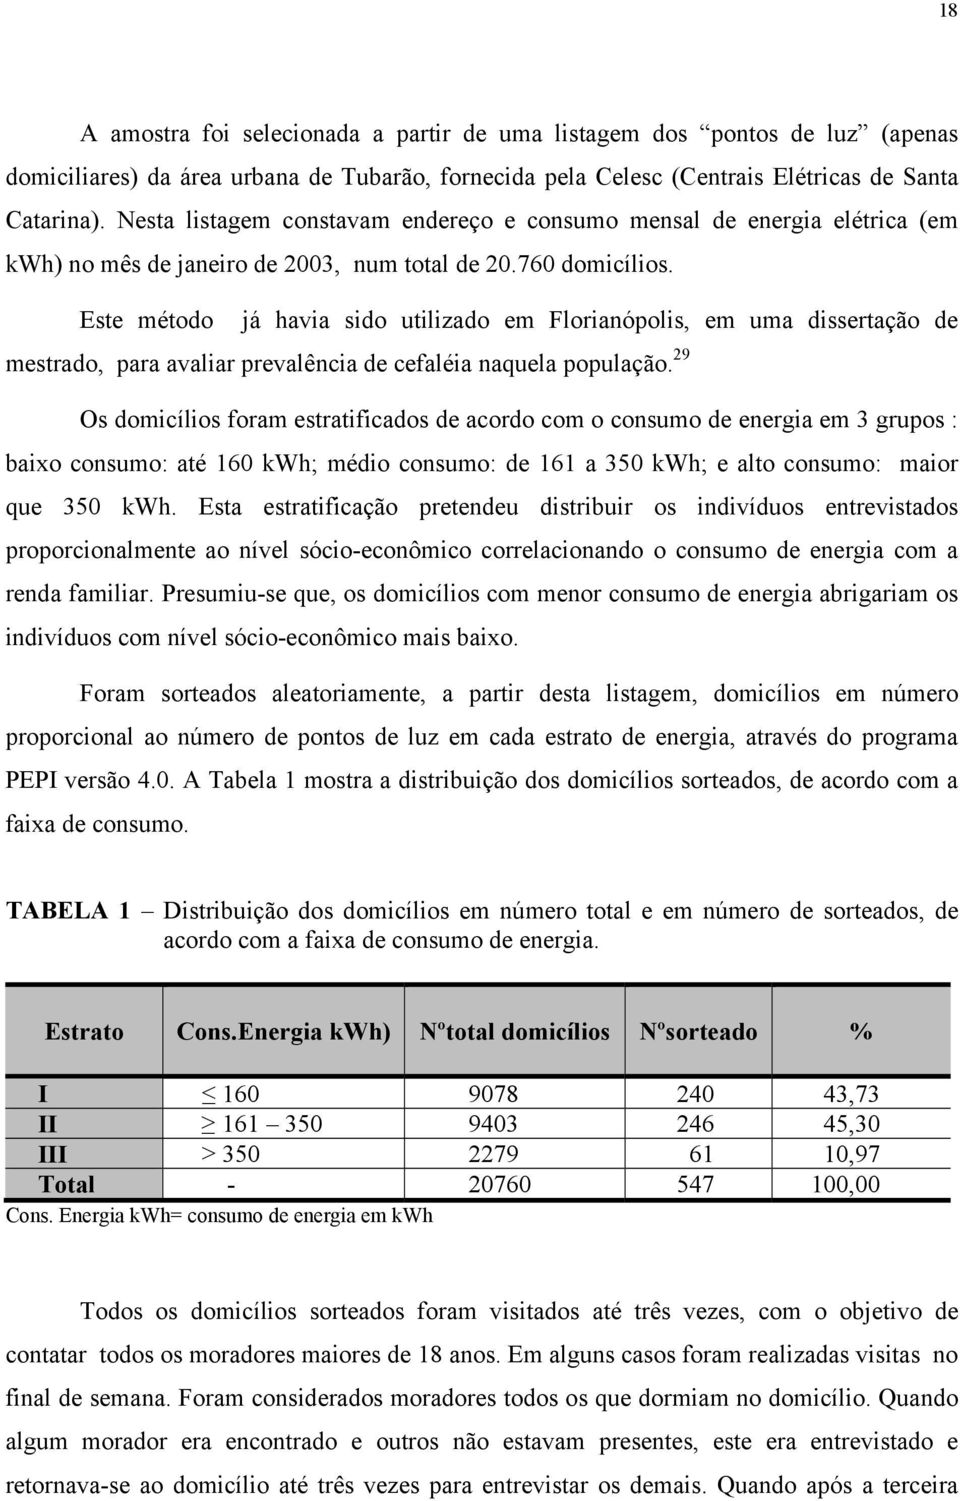 Este método já havia sido utilizado em Florianópolis, em uma dissertação de mestrado, para avaliar prevalência de cefaléia naquela população.